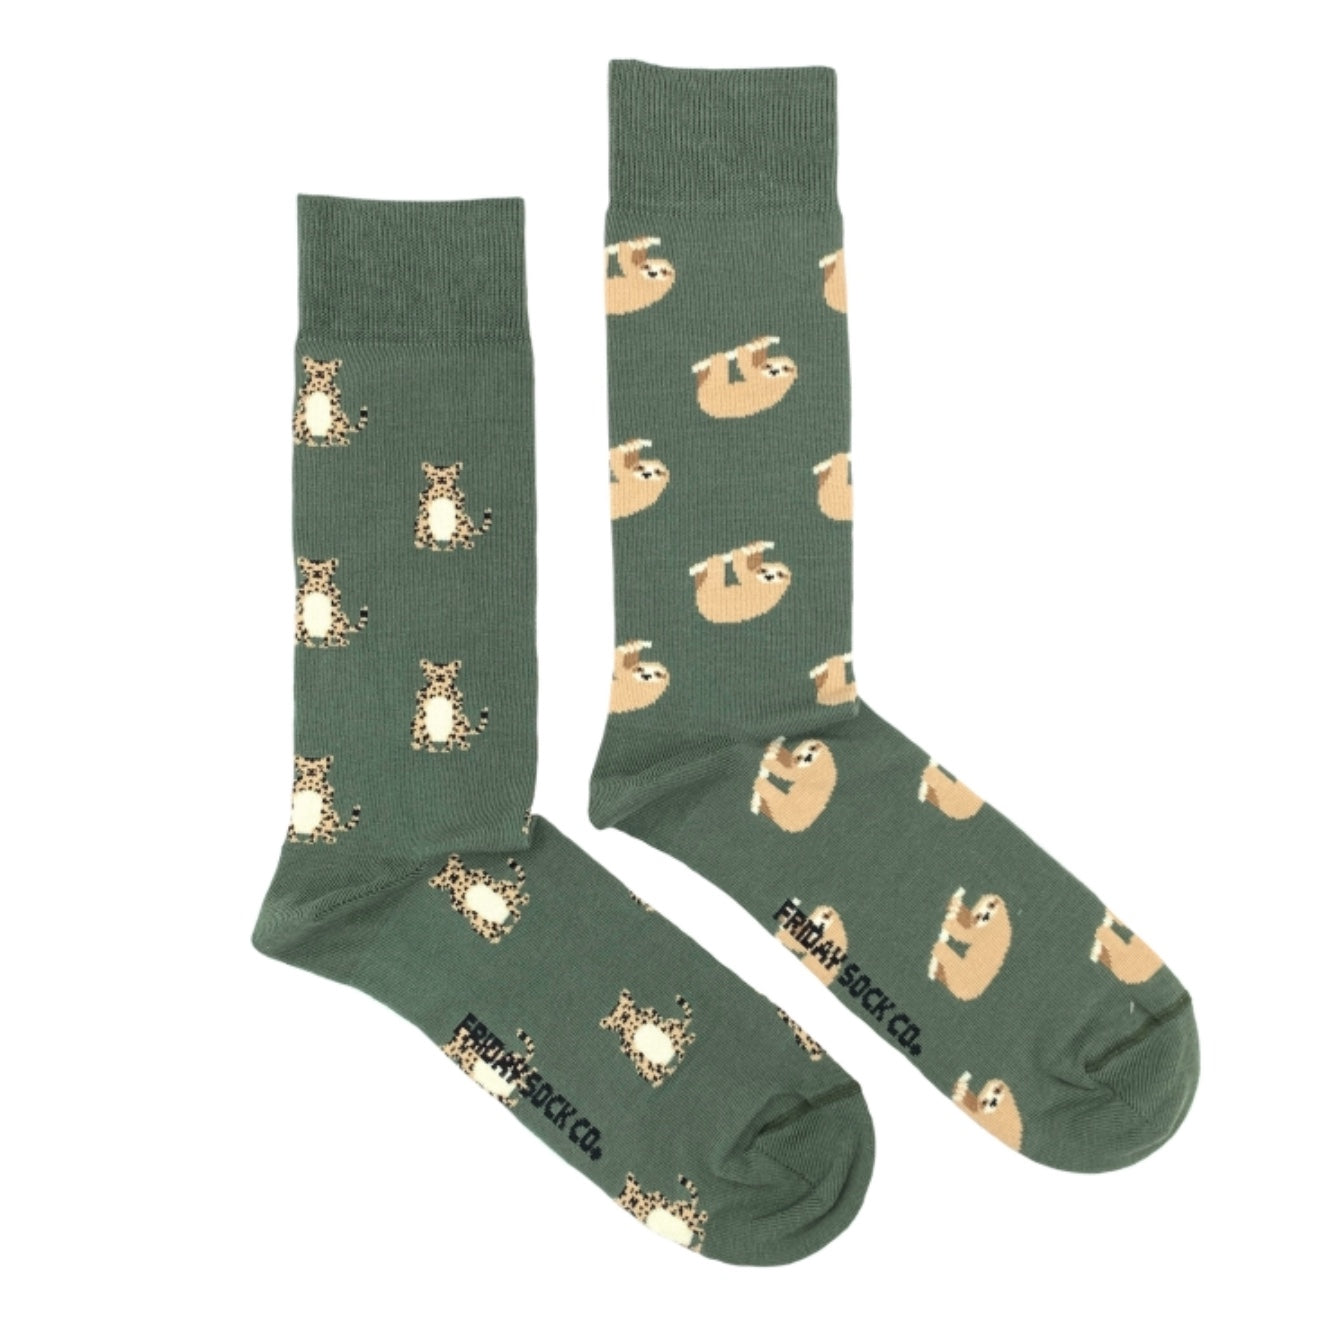 Sloth and Cheetah Mid-Calf Socks